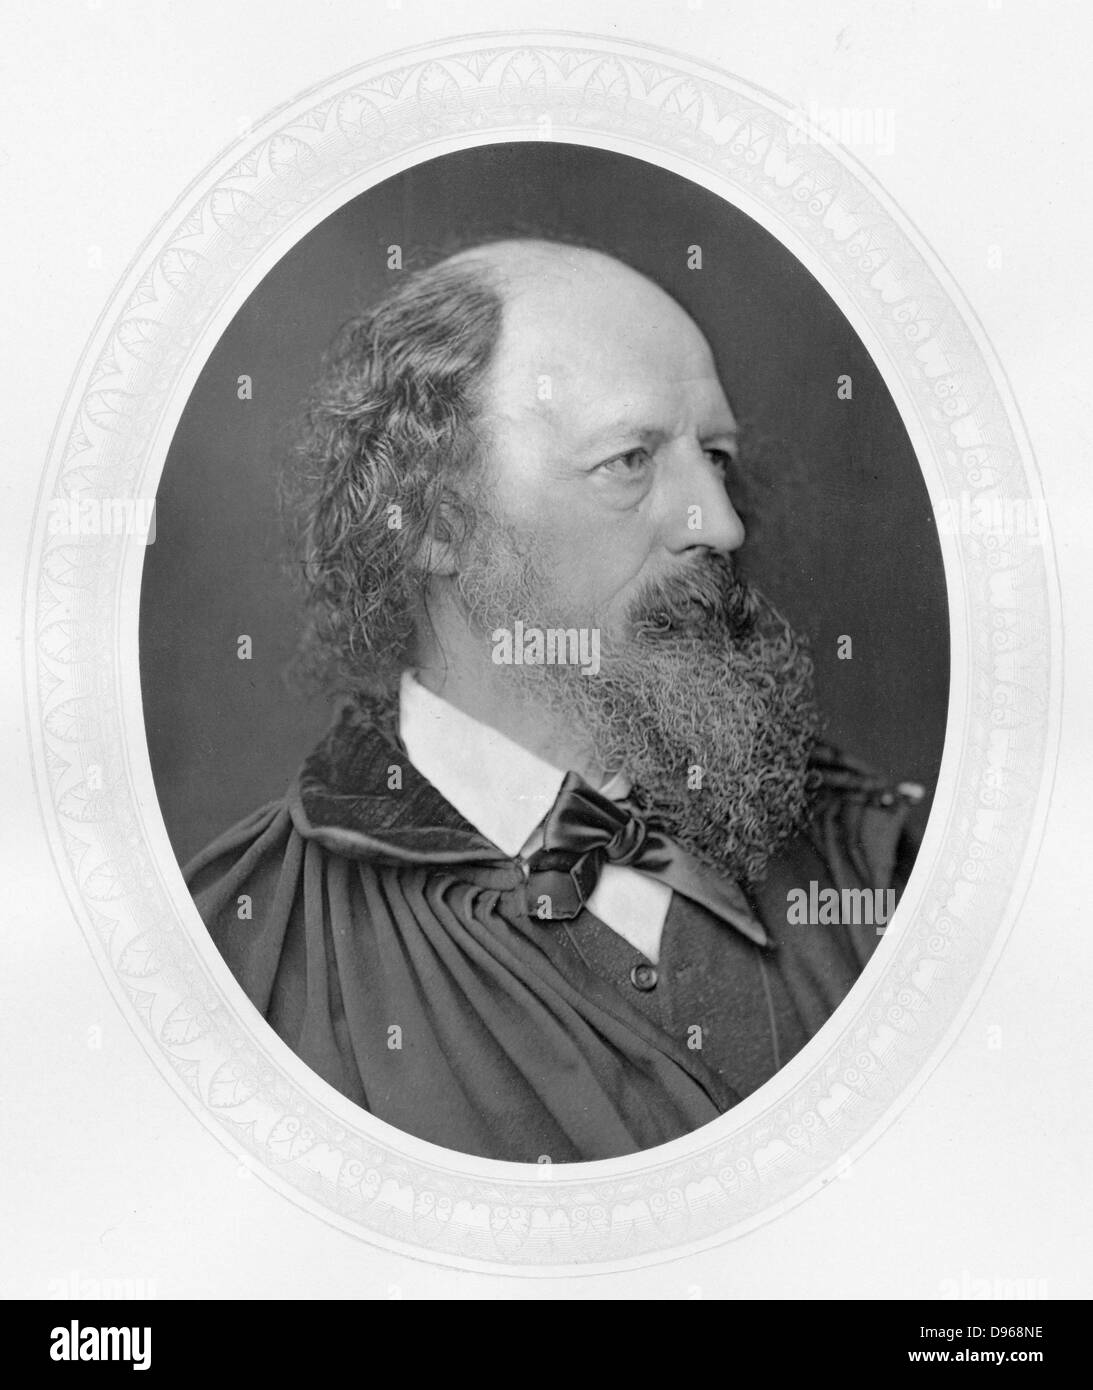 Alfred Tennyson, lst Barone Tennyson (1809-1893) poeta inglese. Riuscito Wordsworth come poeta laureato nel 1850. Fotografia pubblicata c1880. Woodburytype Foto Stock